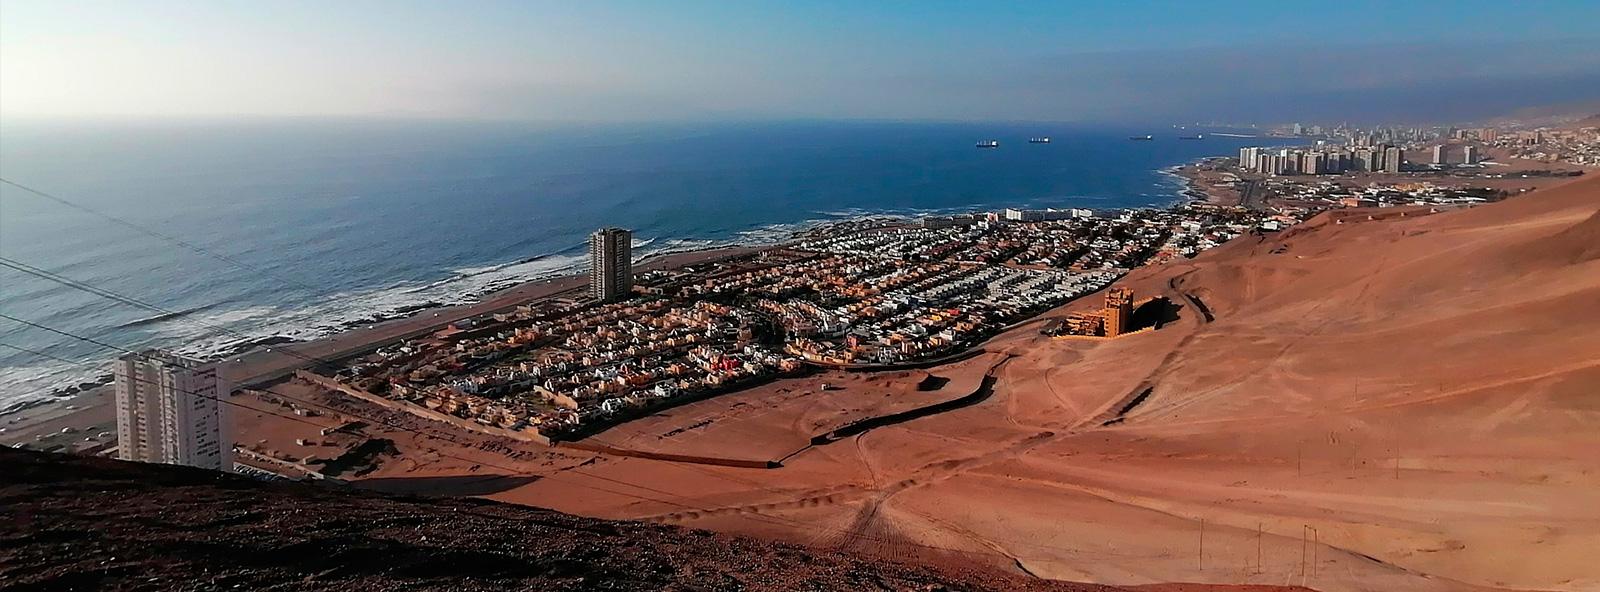 El proyecto que se implementará en Antofagasta busca ser un ejemplo replicable en otras zonas donde el recurso geotérmico permita su aprovechamiento en términos productivos y de climatización.